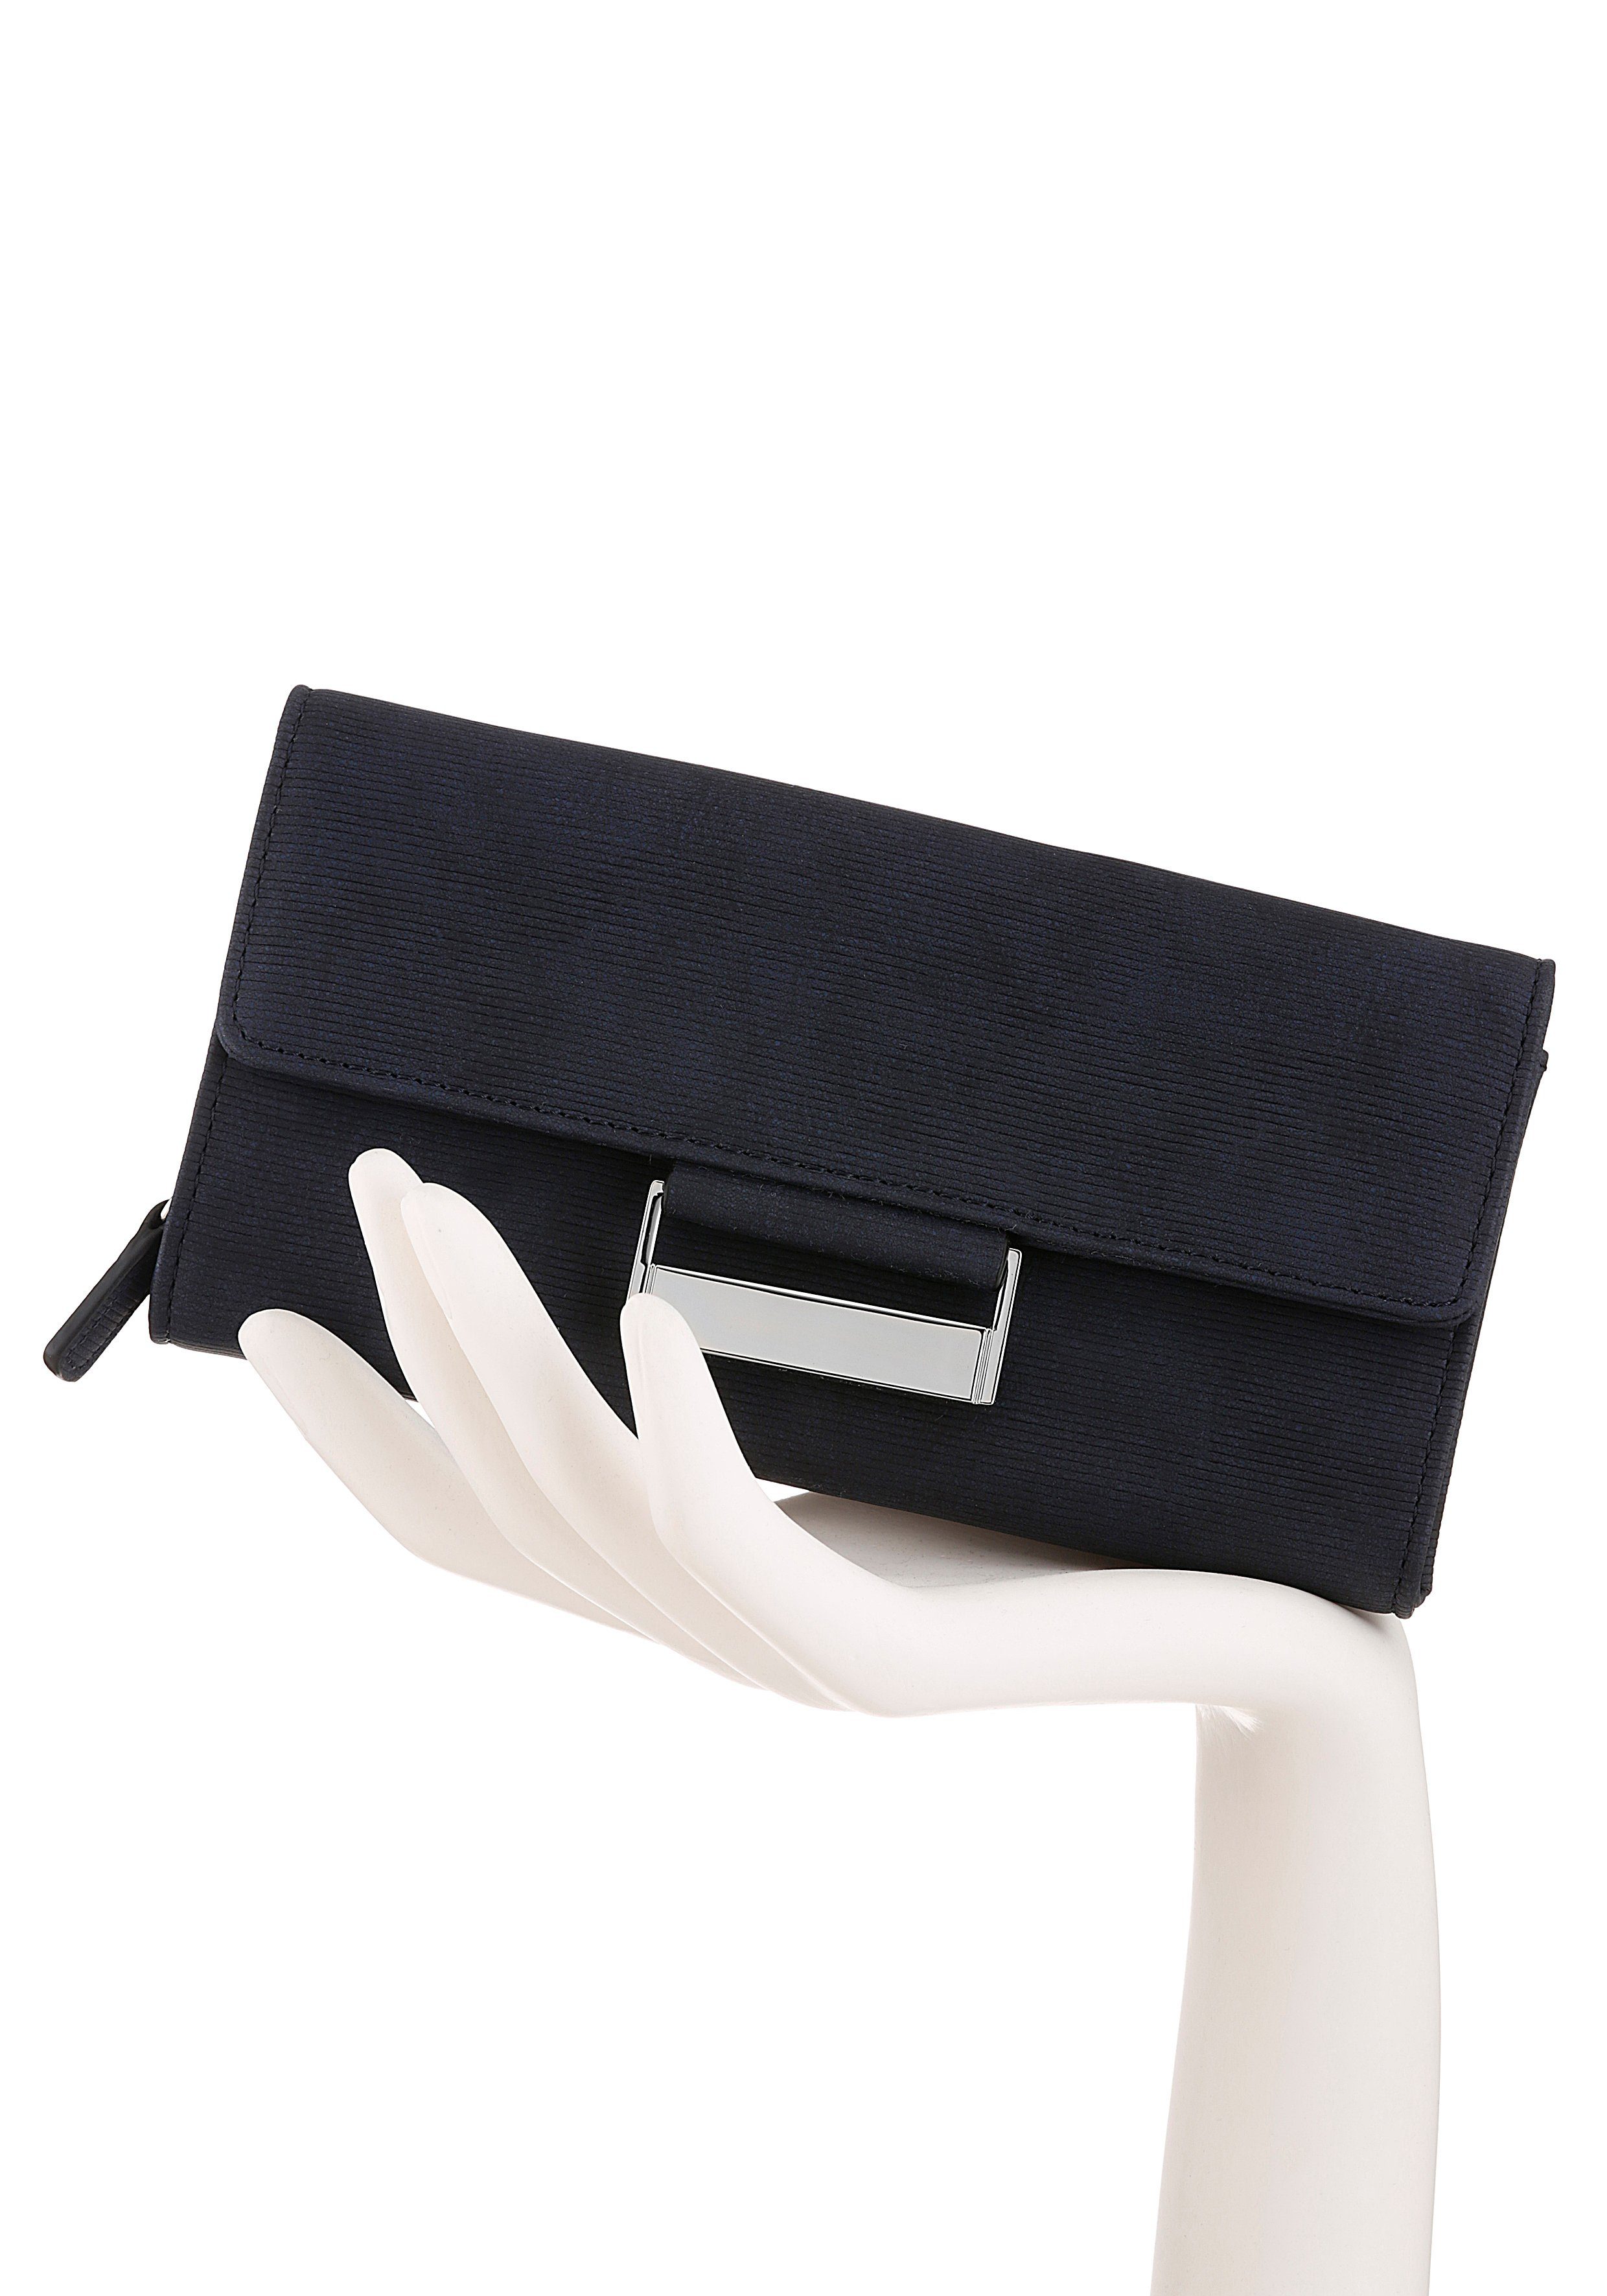 mit different GERRY purse lh9f, praktischer Geldbörse Einteilung dunkelblau Bags be WEBER